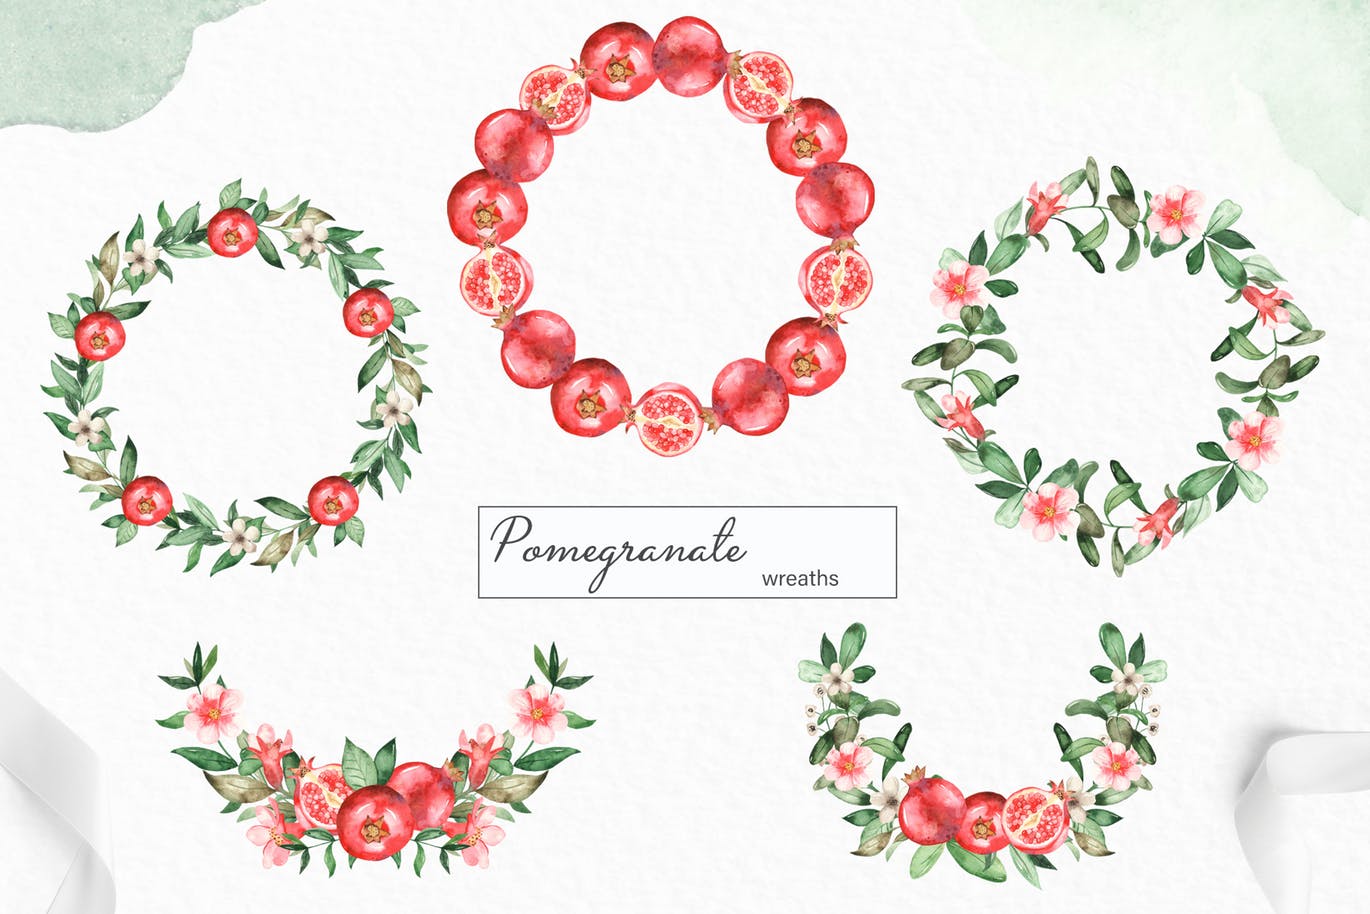 水彩石榴剪贴画/花框/花环素材库精选设计素材 Watercolor pomegranate. Clipart, frames, wreaths插图(5)